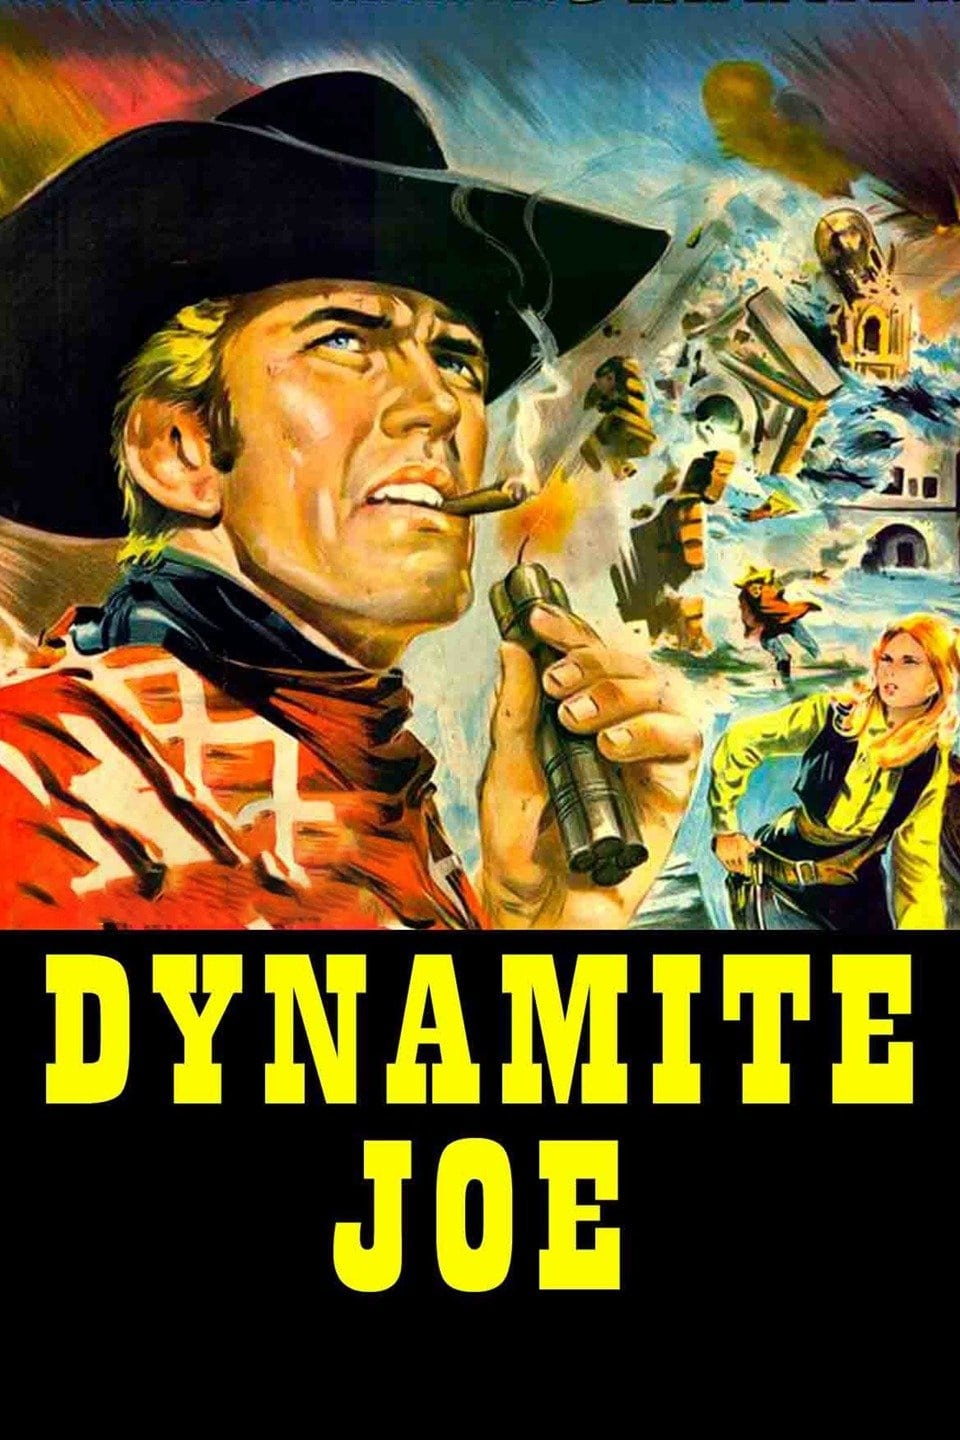 Dynamite Joe (1967)